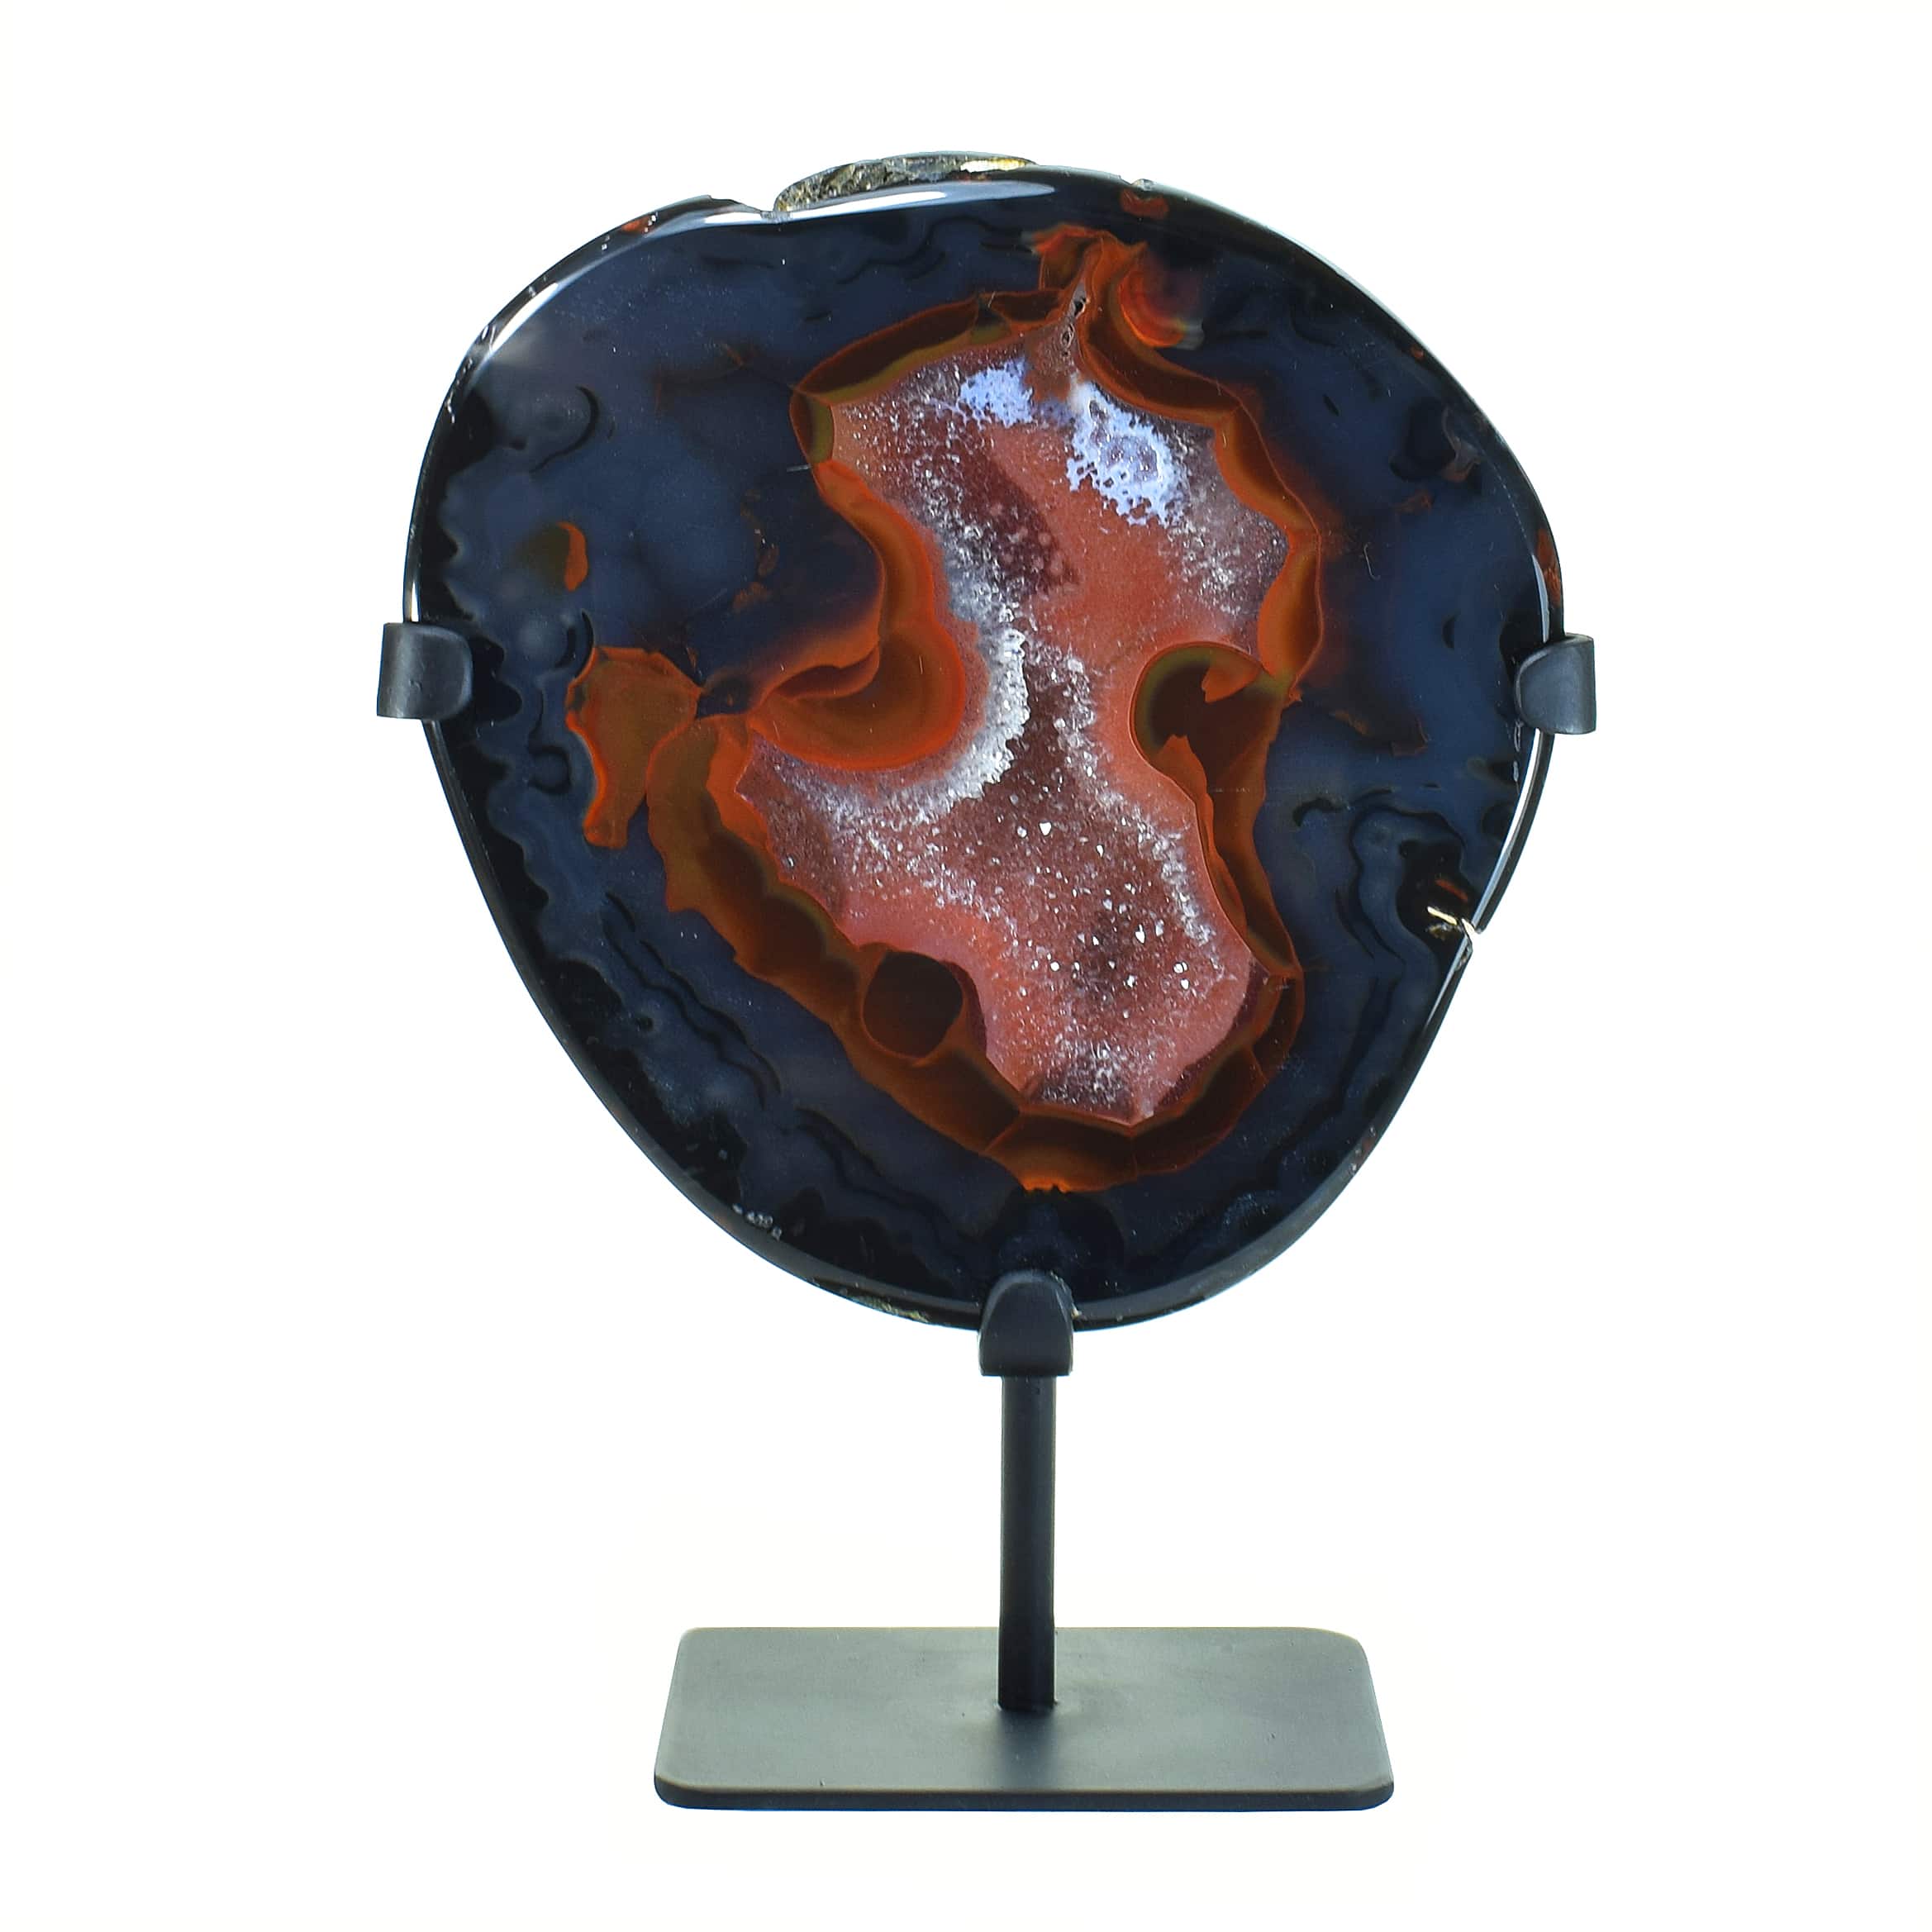 Γεώδες αχάτη με κρύσταλλα xαλαζία στο εσωτερικό του. Το γεώδες είναι τοποθετημένο σε μεταλλική βάση και έχει ύψος 26,5cm. Αγοράστε online shop.